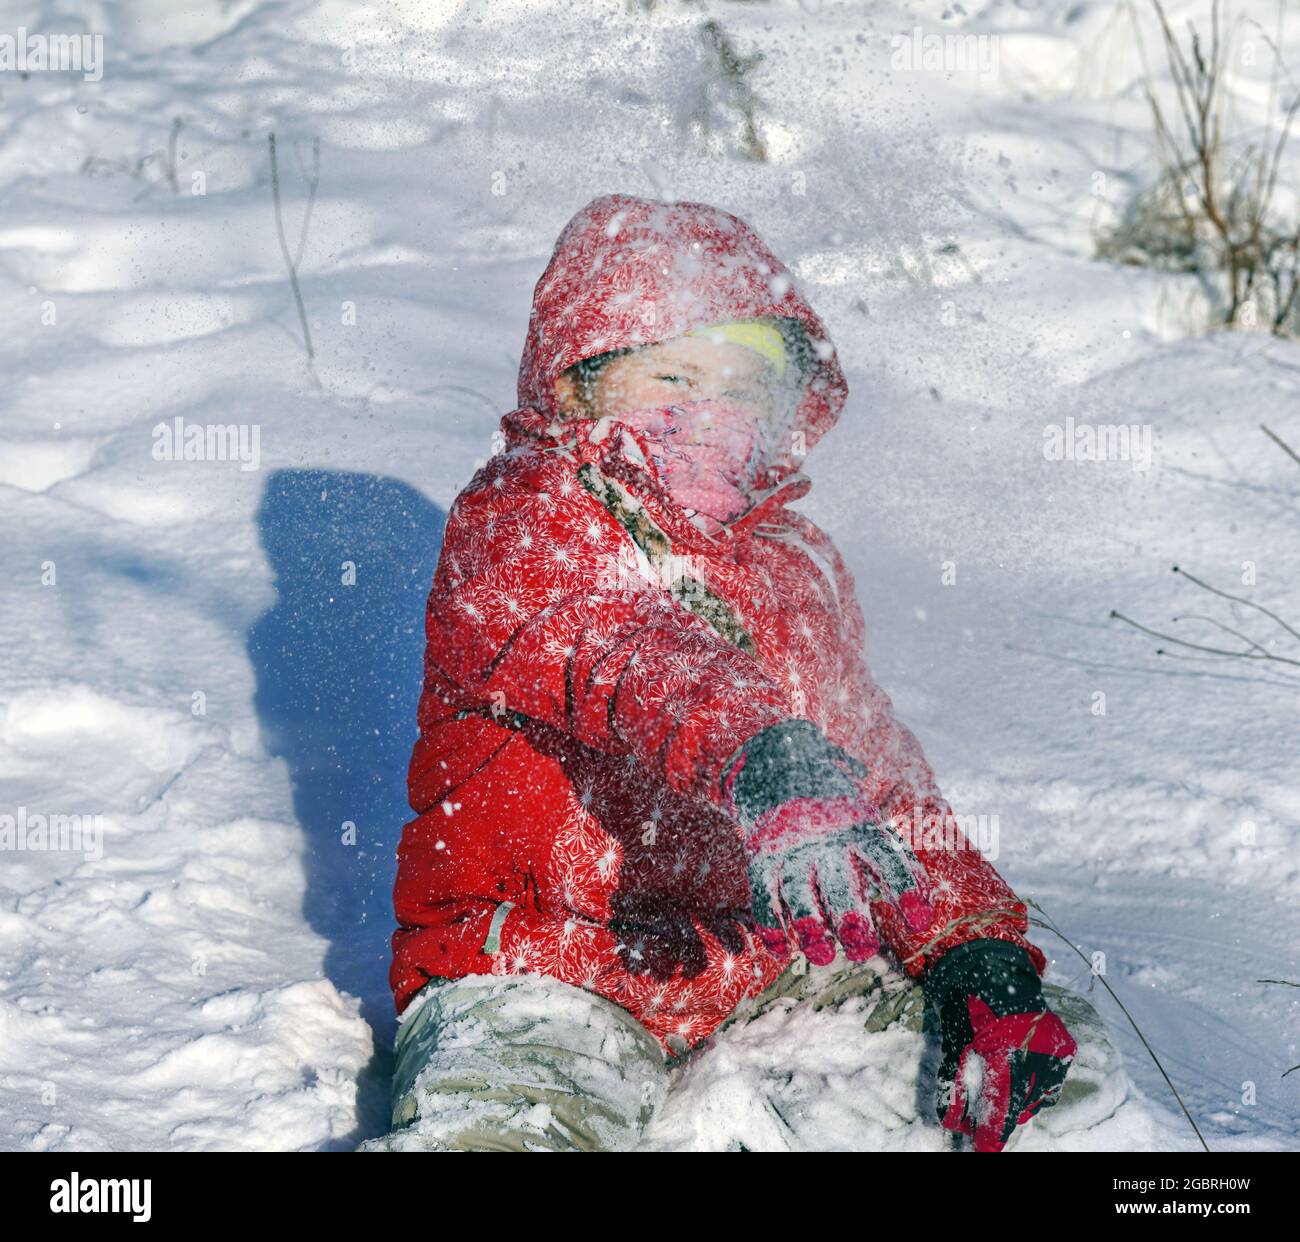 Retrato De Niño Lindo En Ropa De Invierno De Color Rojo Que Se Divierten  Con La Nieve. Ocio Activo Al Aire Libre Con Los Niños En Invierno. Niño Con  Gorro, Guantes De